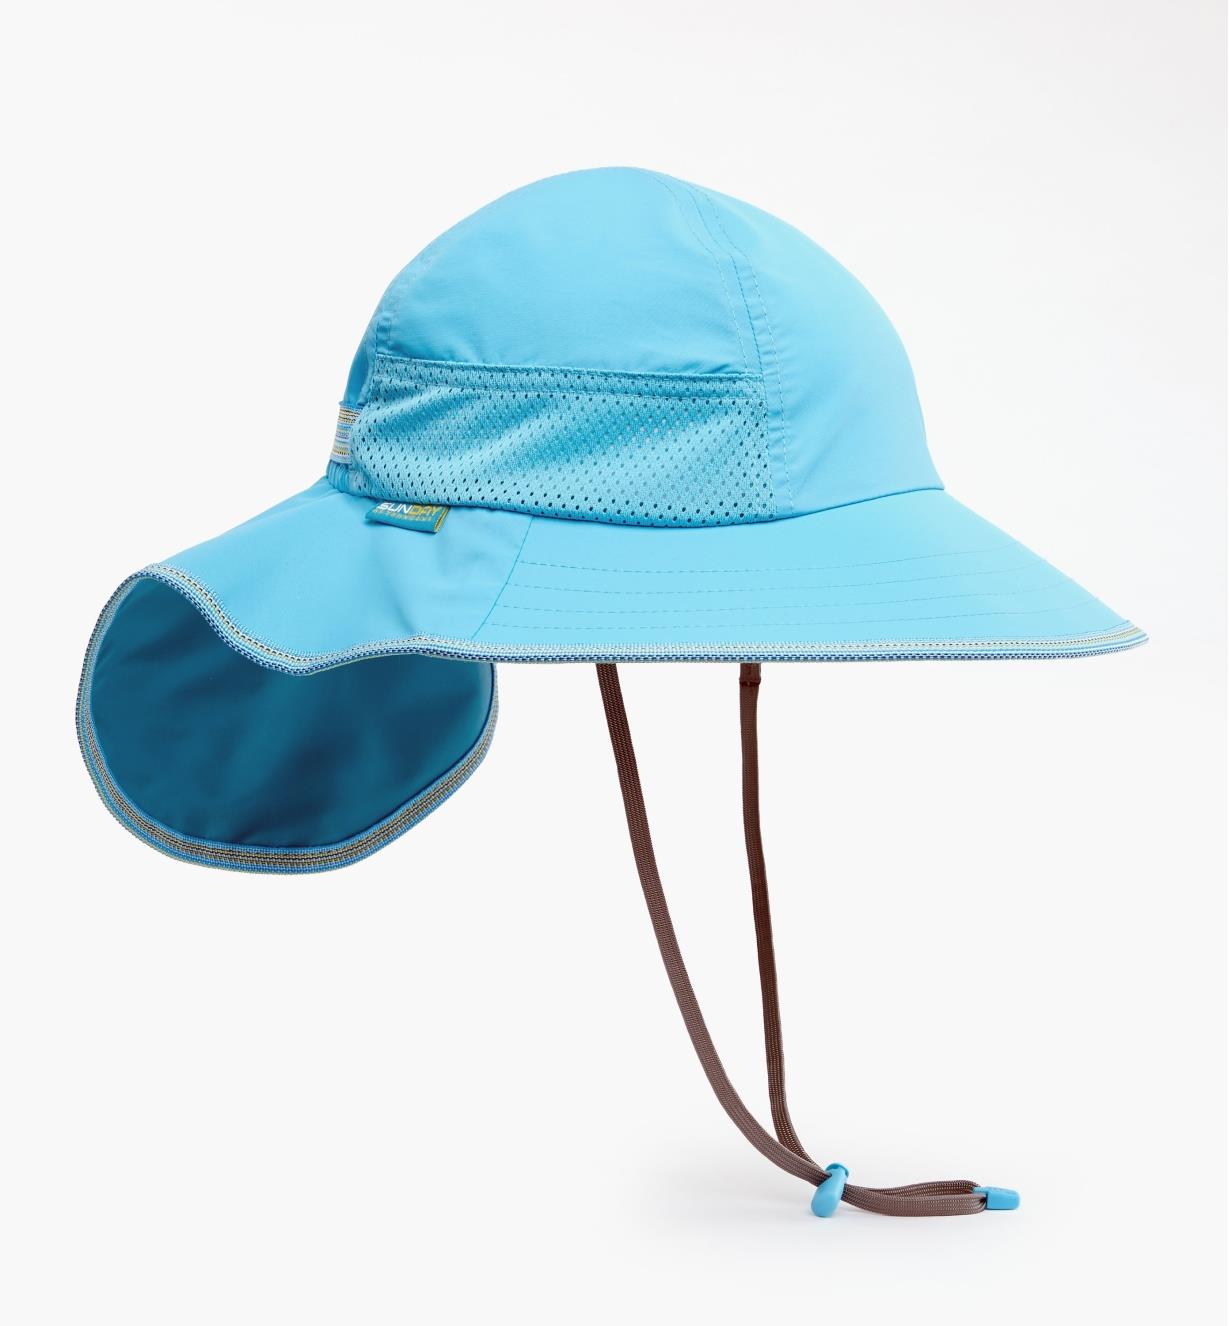 HL561 - Kids’ Play Hat, Blue